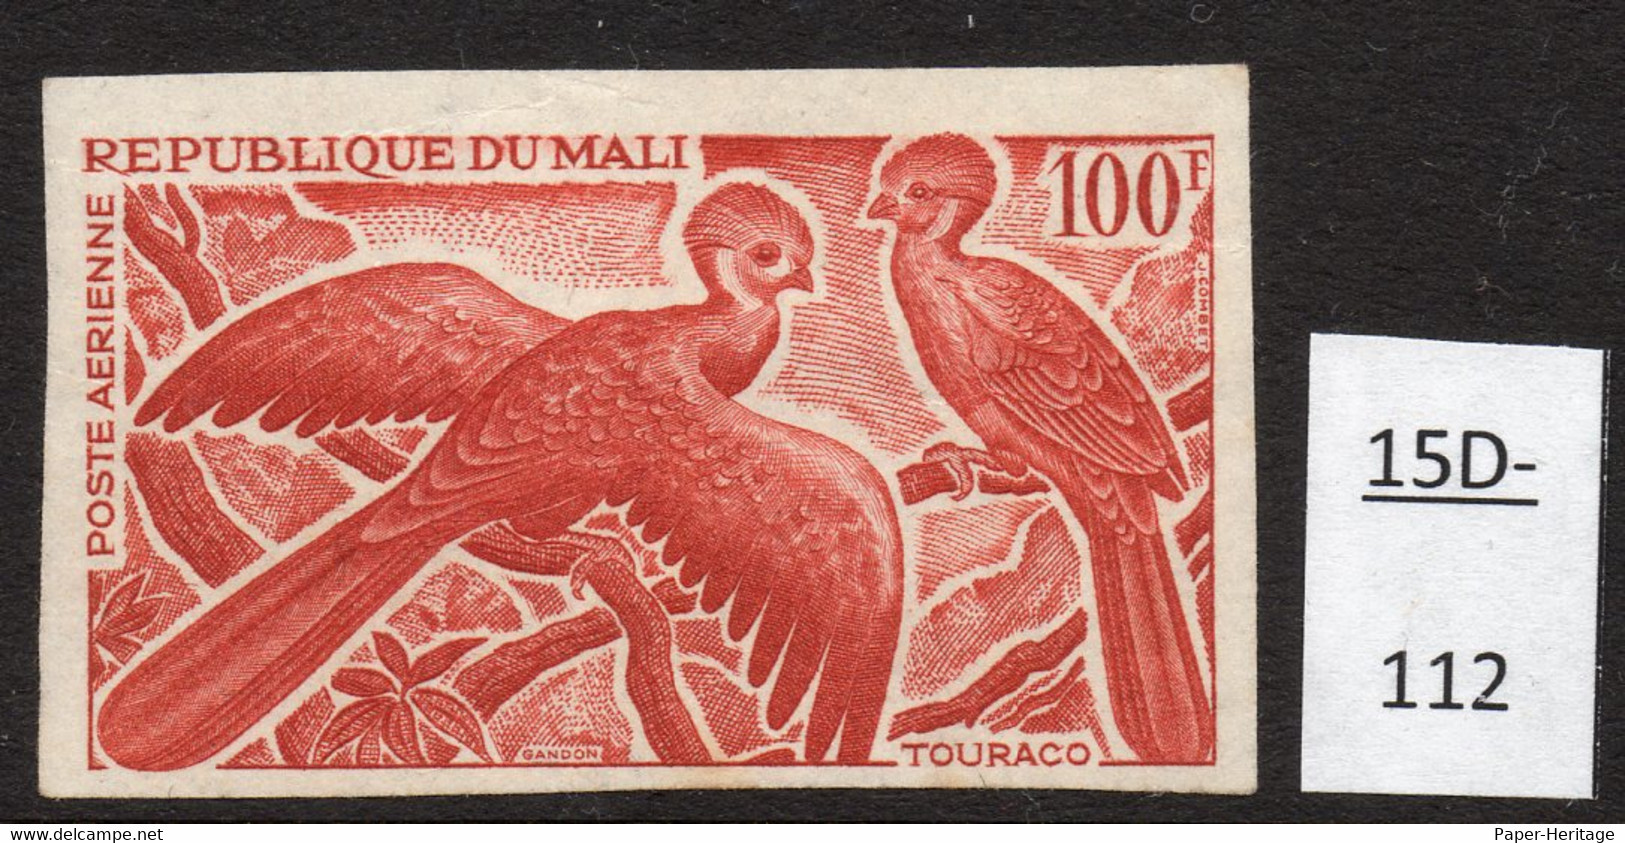 Mali 1965 100fr Turaco Oiseau Epreuve De Couleur, Bird Colour Trial / Proof In Deep Red-brown. Mint - Cuco, Cuclillos